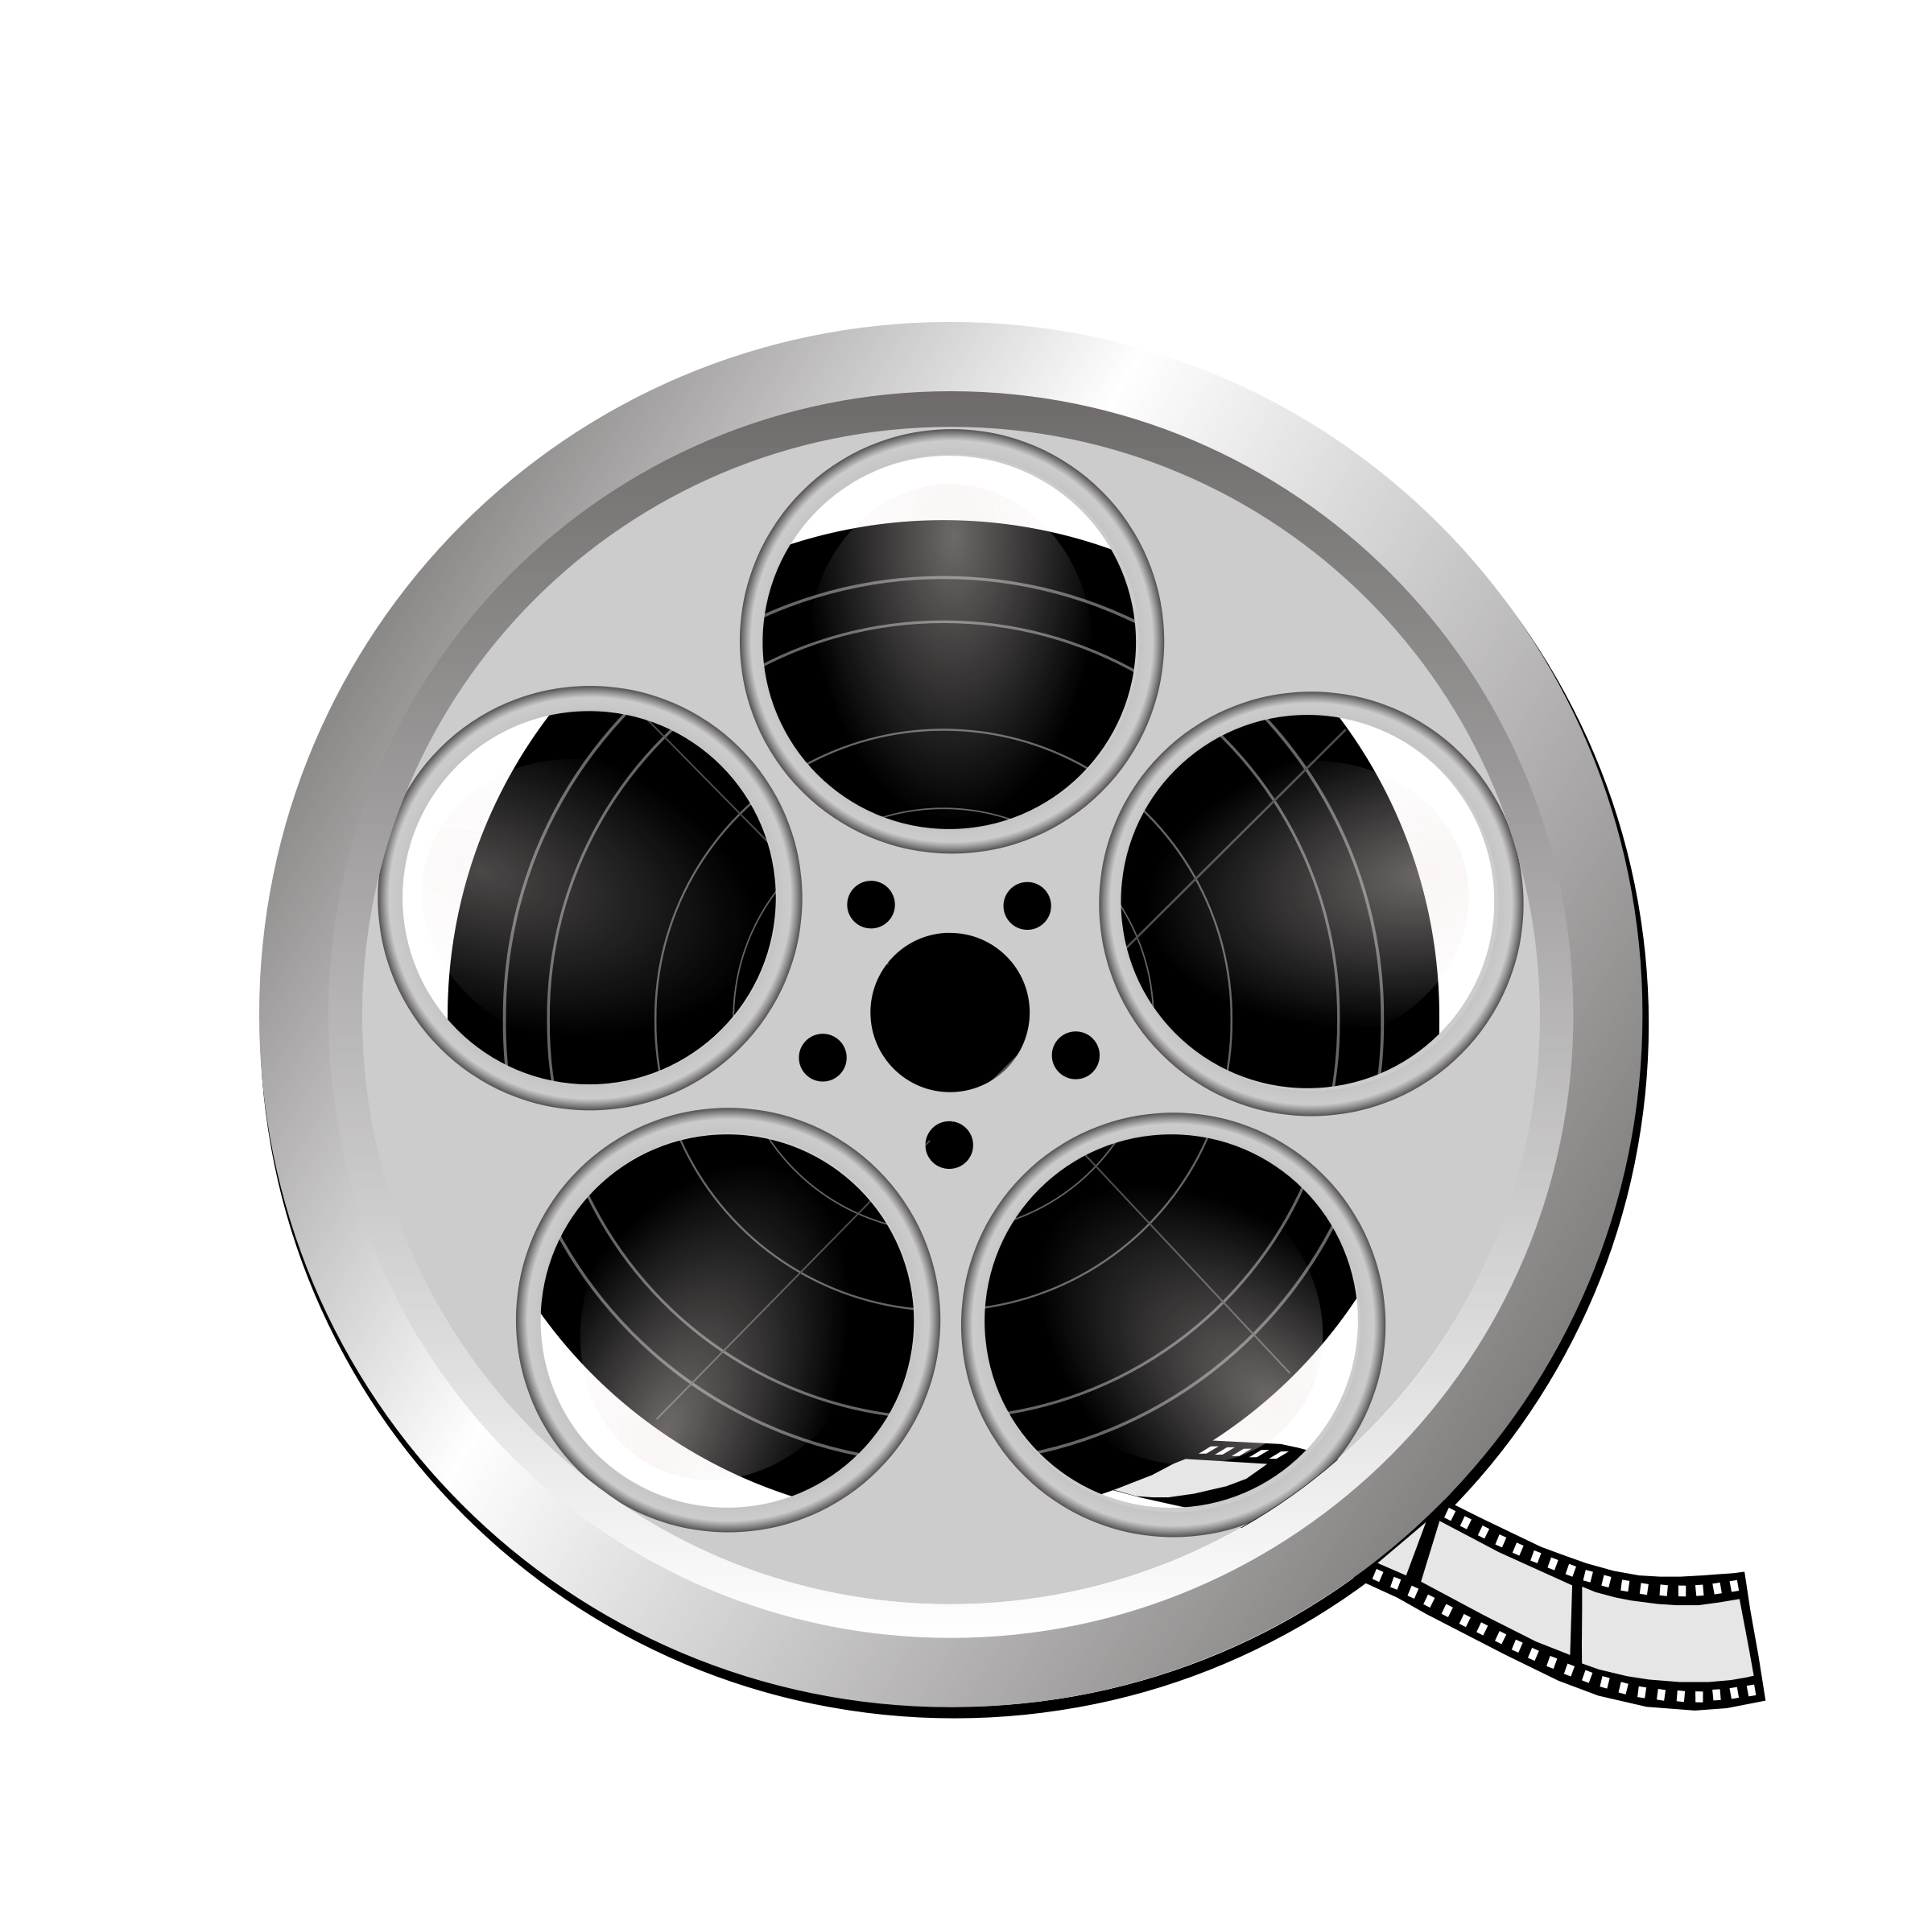 Clipart - Movie icon